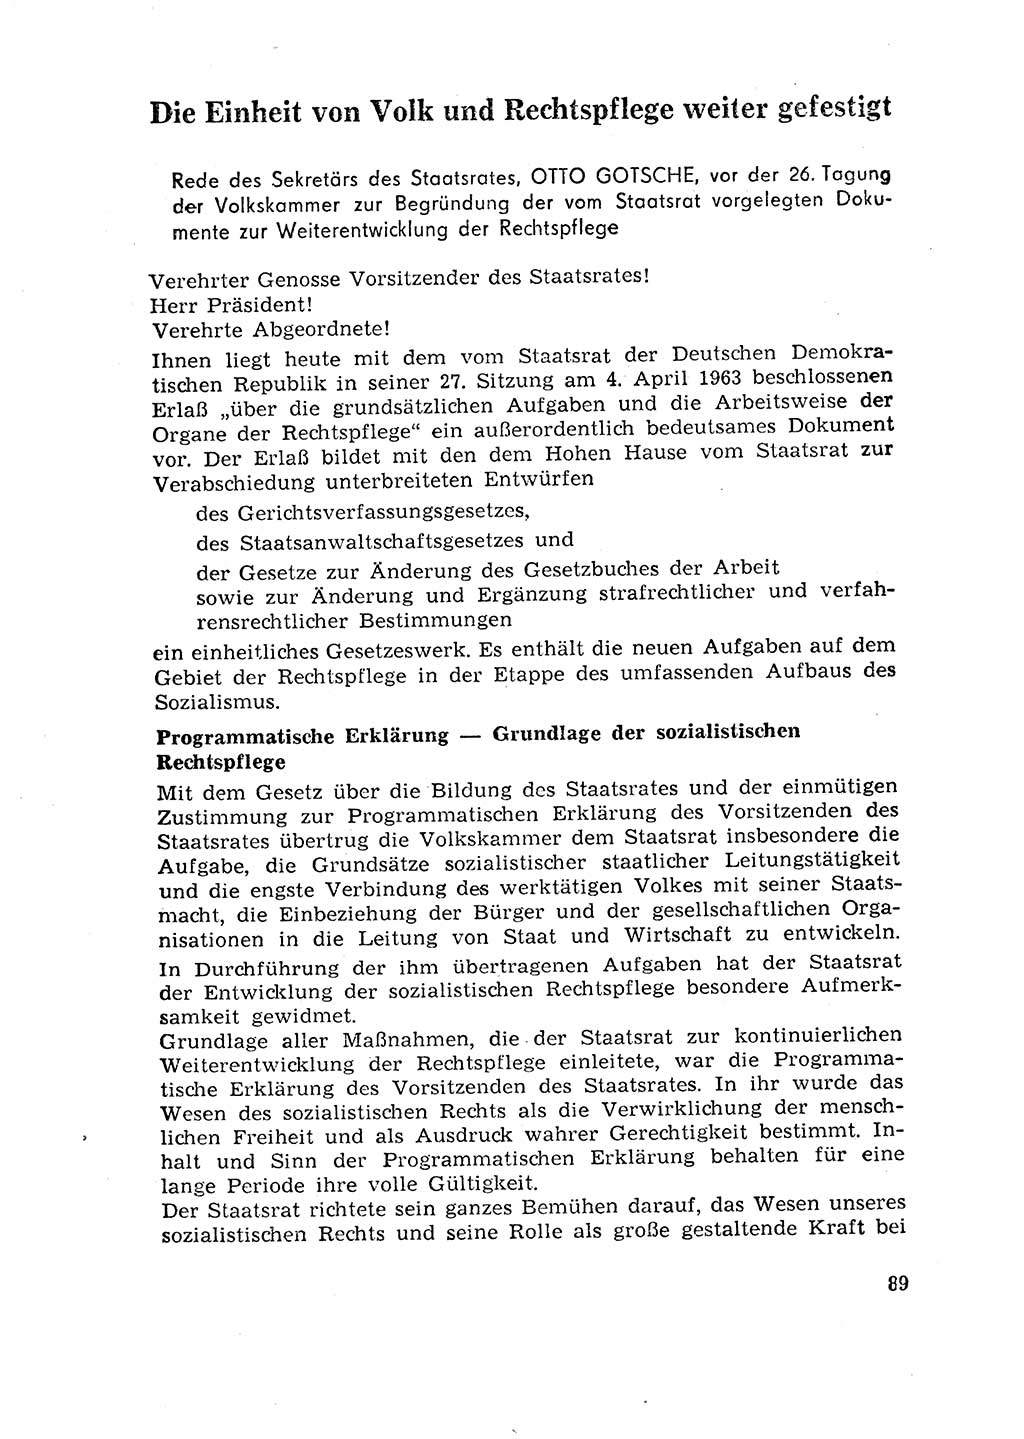 Rechtspflegeerlaß [Deutsche Demokratische Republik (DDR)] 1963, Seite 89 (R.-Pfl.-Erl. DDR 1963, S. 89)